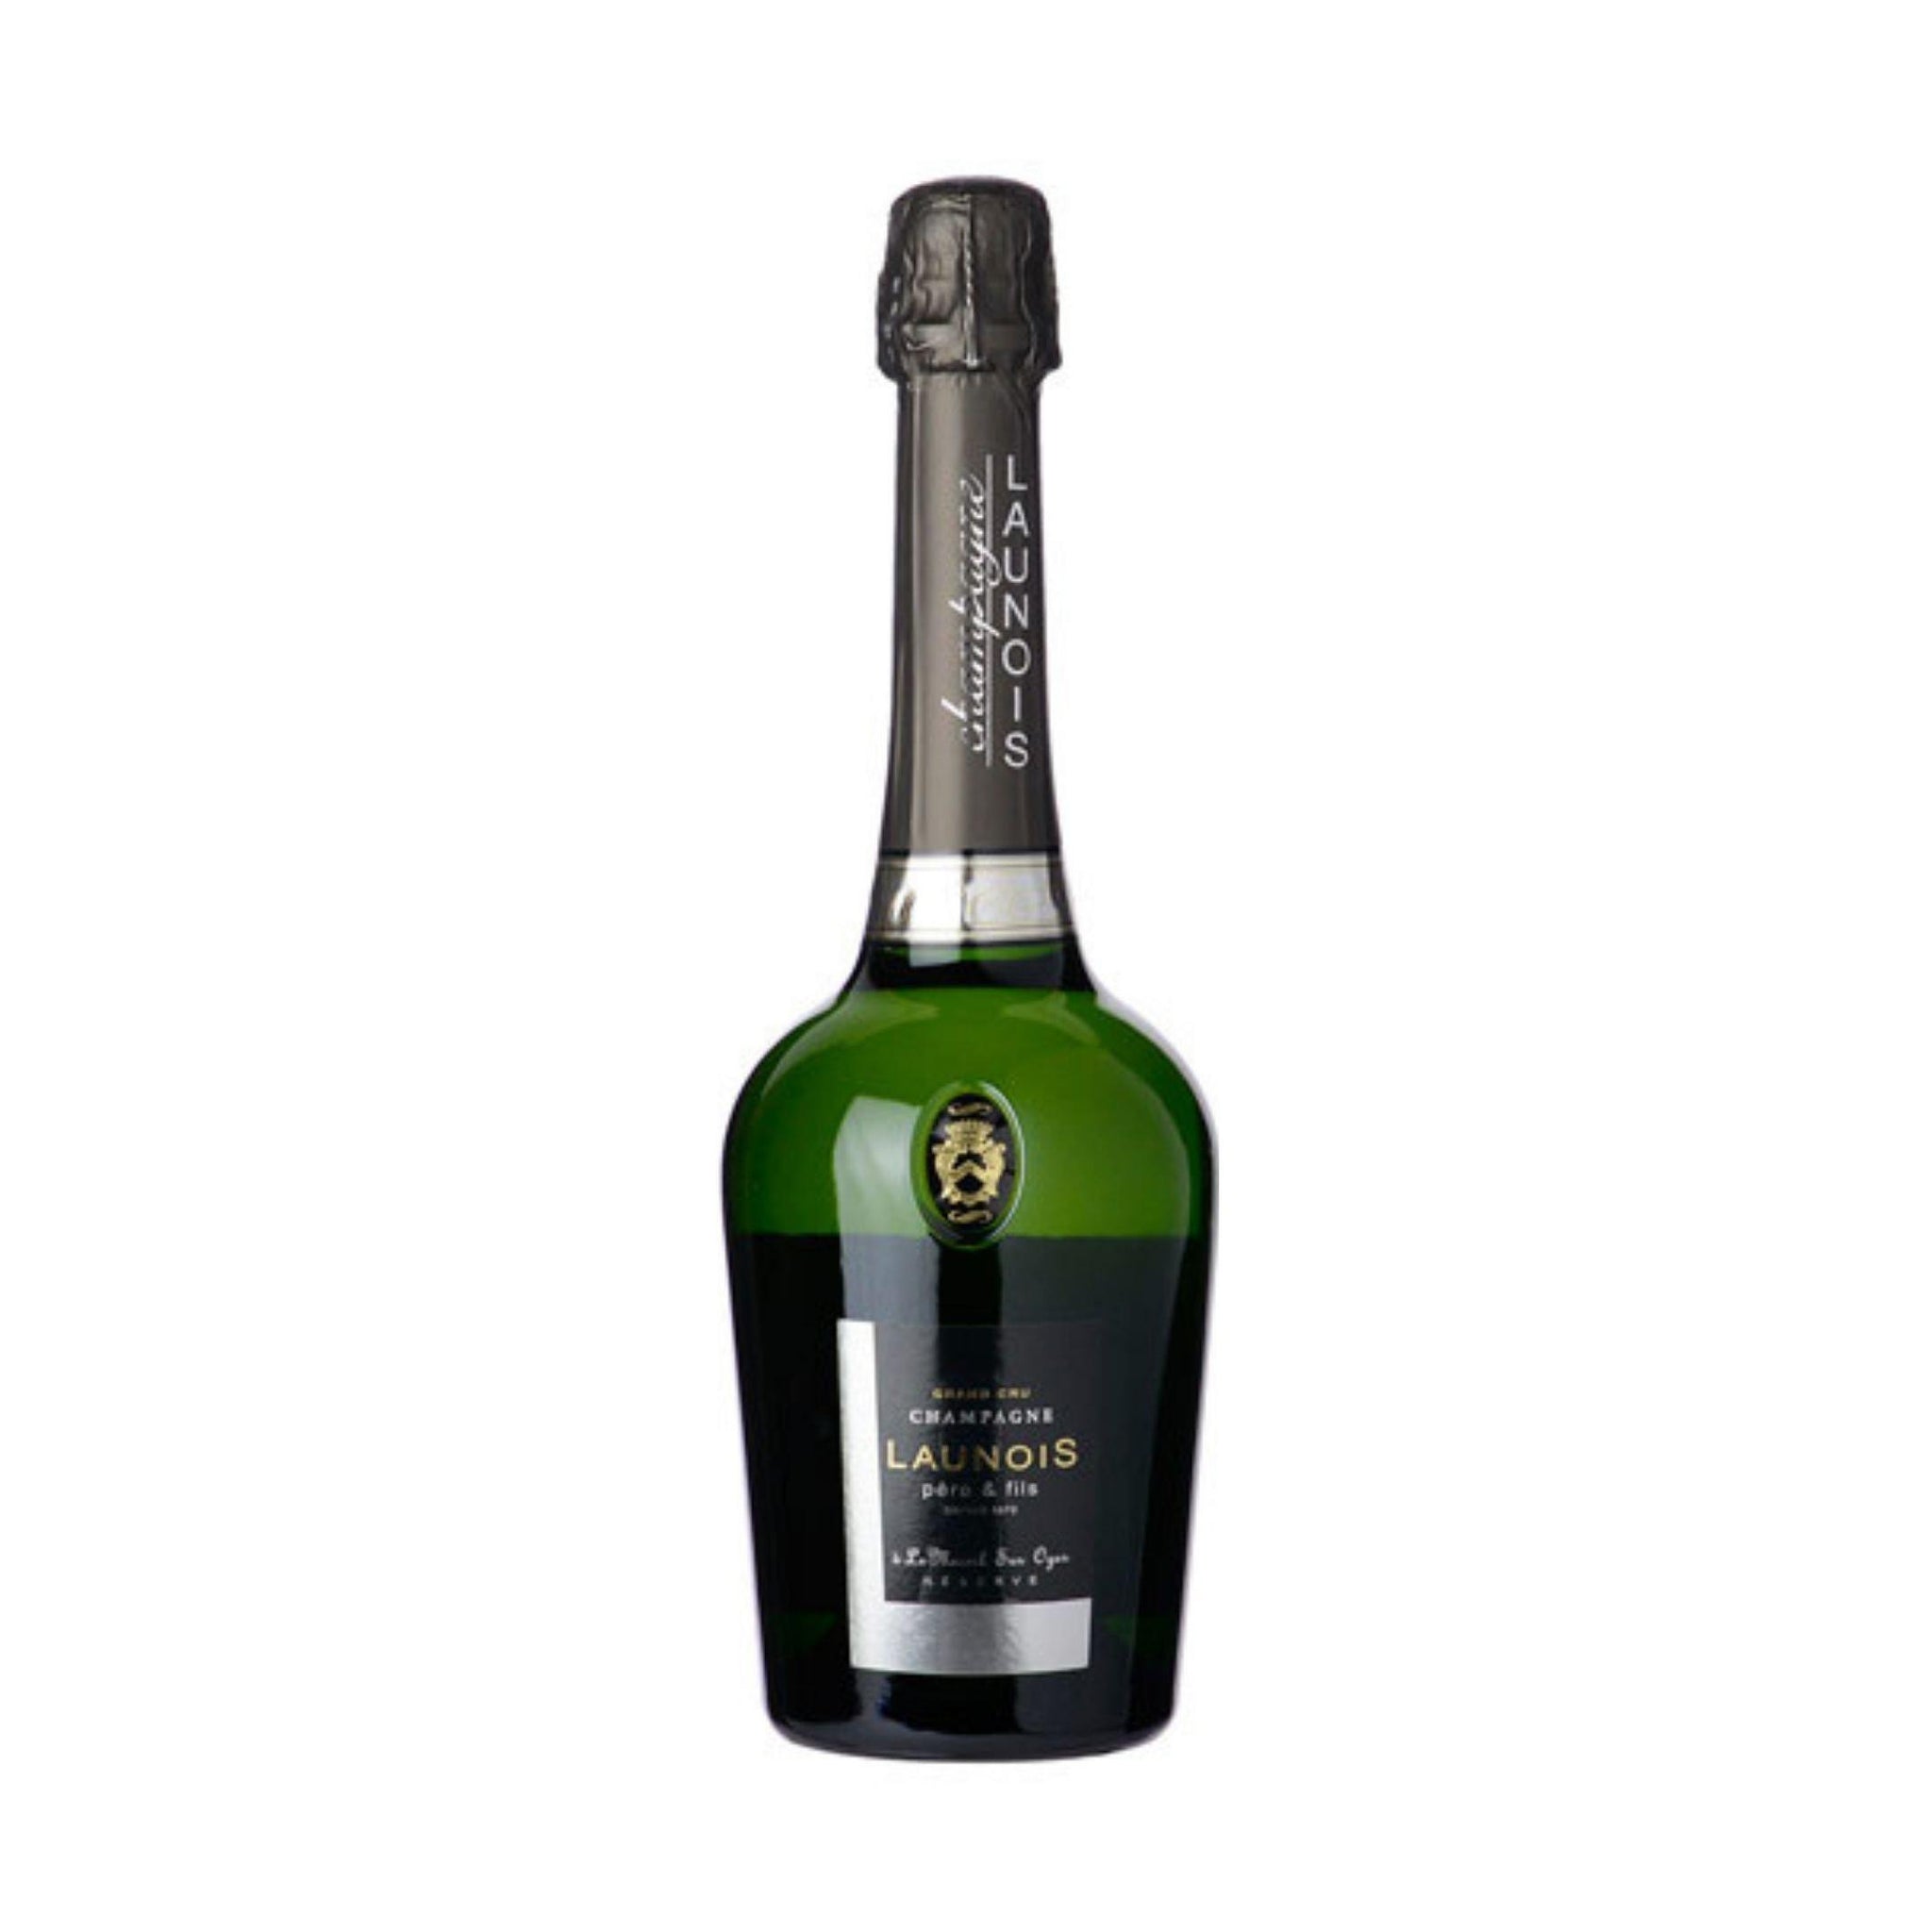 Launois Père et Fils Champagne Grand Cru Brut Réserve Blanc de Blancs (NV) 750ml